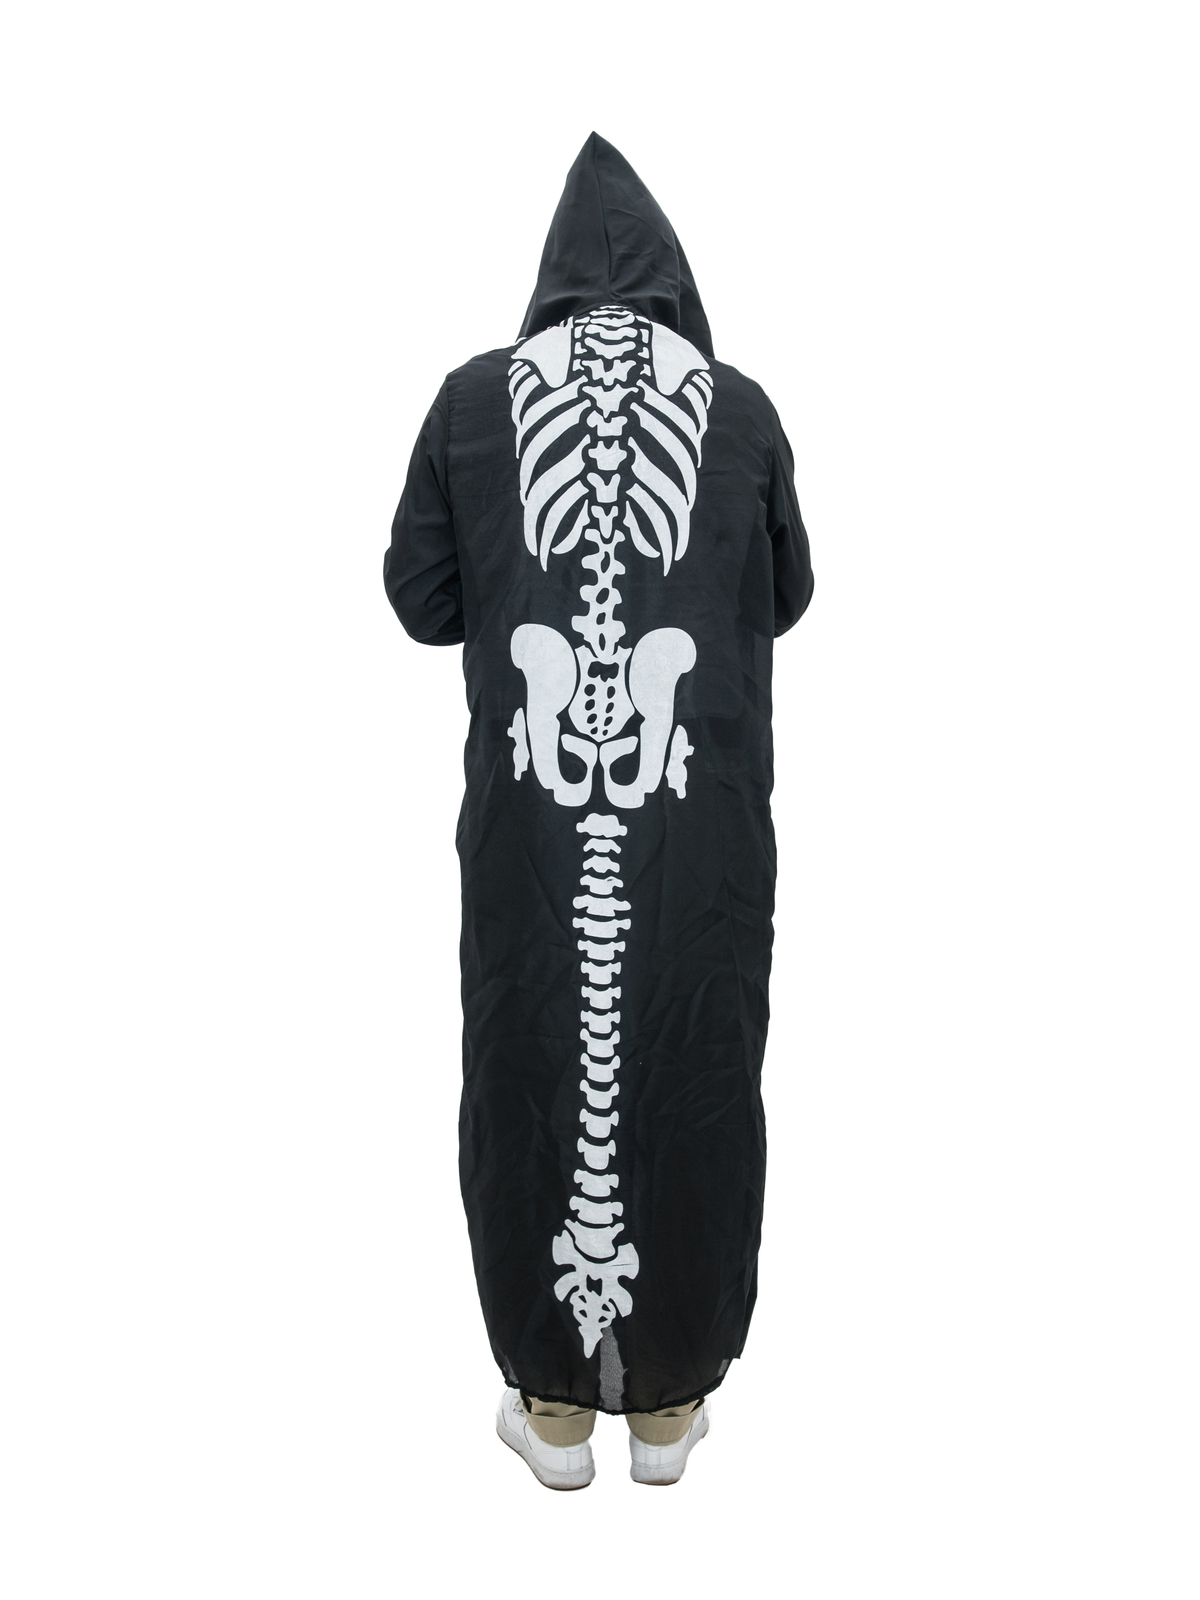 EUROPALMS Halloween Kostüm Skelett-Umhang